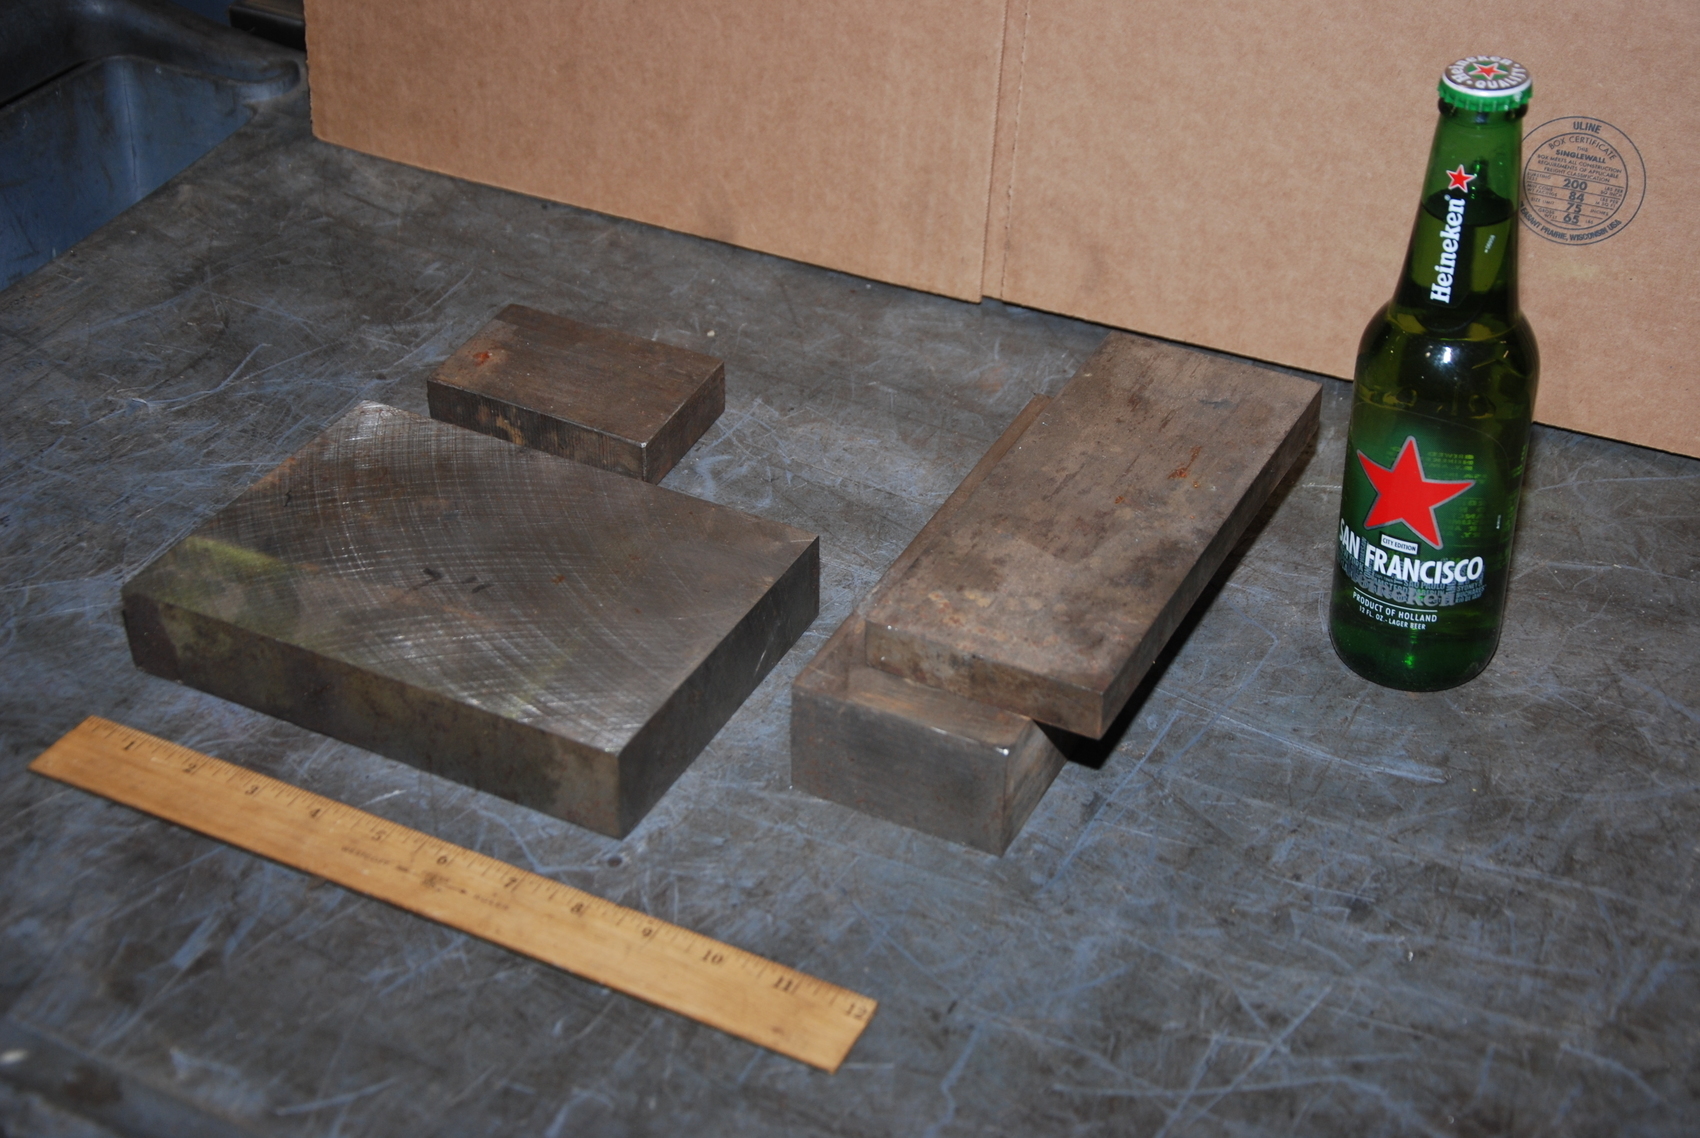 Lot of 4 steel Rectangular Bars for blacksmith anvil,40 lbs